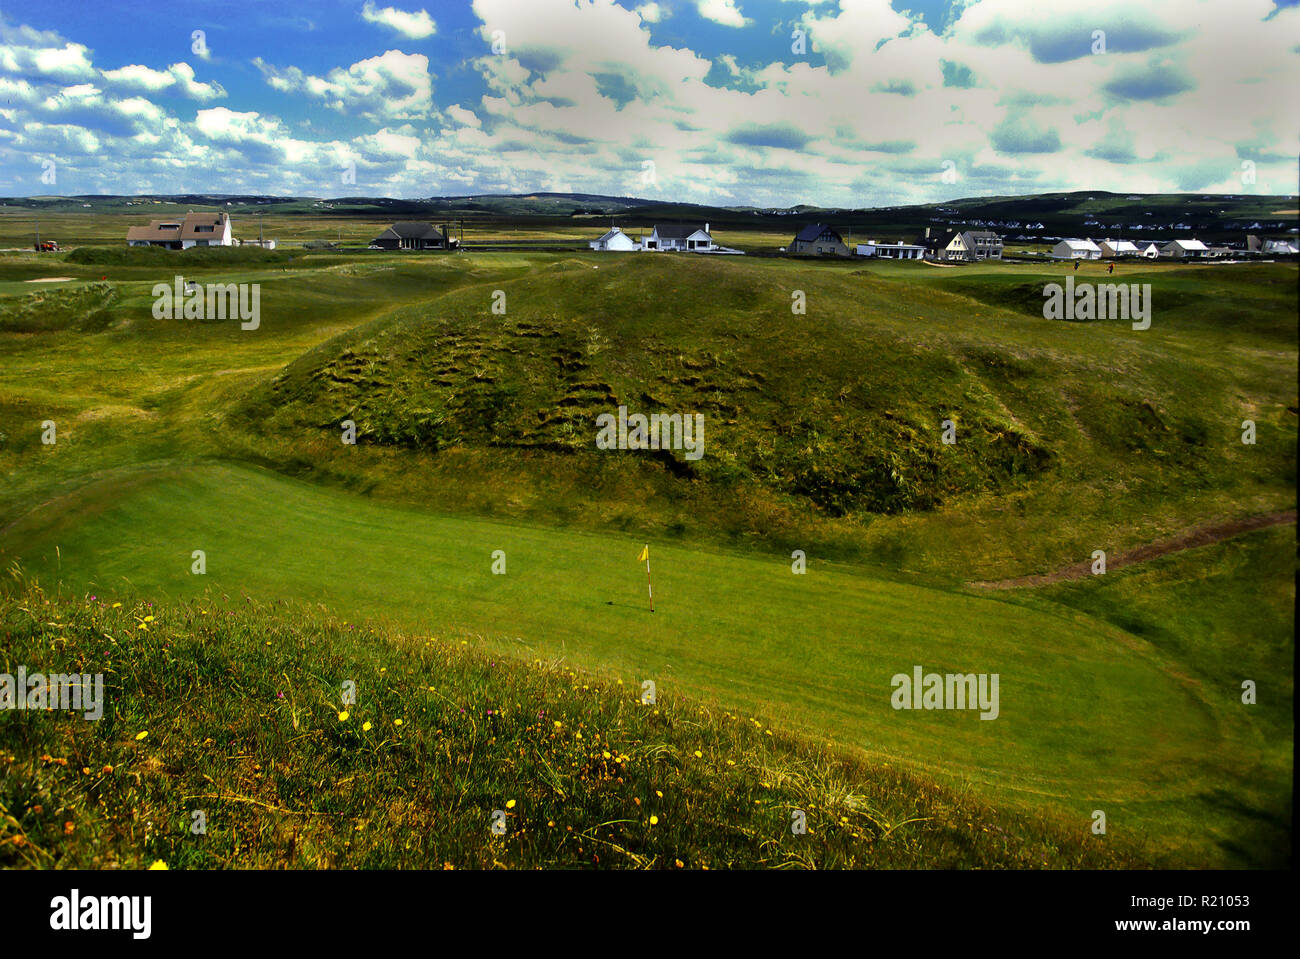 5. Loch ein Par 3 Der Dell genannt, Lahinch Golf Club, Irland Austragungsort der Irish Open 2019 auf der PGA European Tour Stockfoto